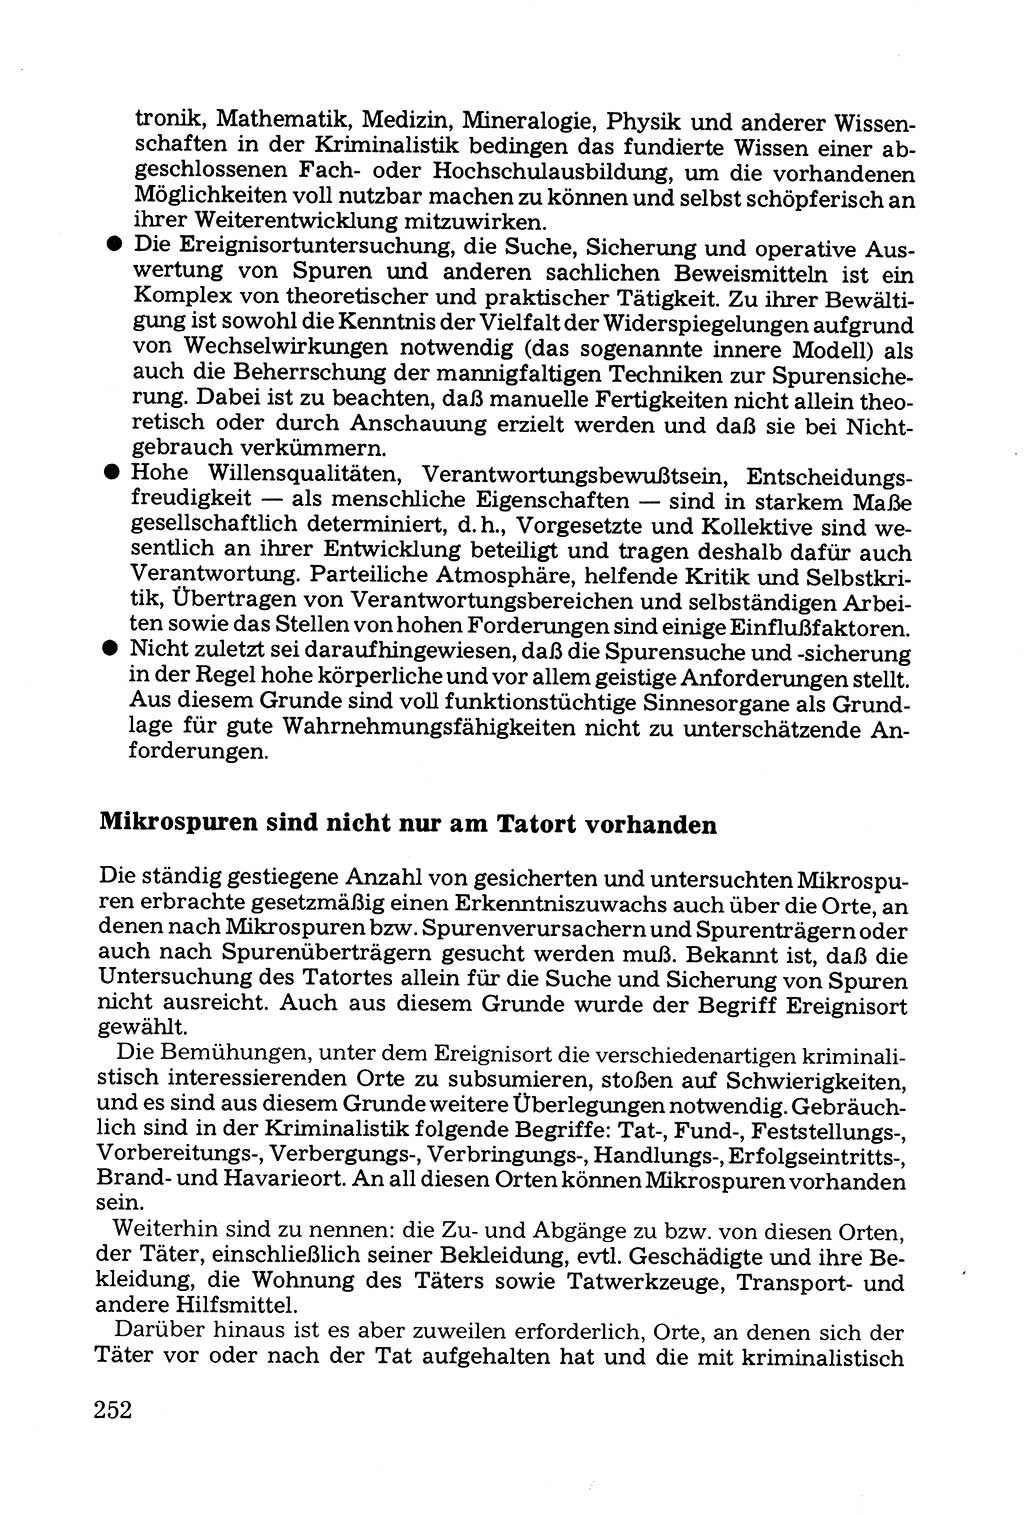 Grundfragen der Beweisführung im Ermittlungsverfahren [Deutsche Demokratische Republik (DDR)] 1980, Seite 252 (Bws.-Fhrg. EV DDR 1980, S. 252)